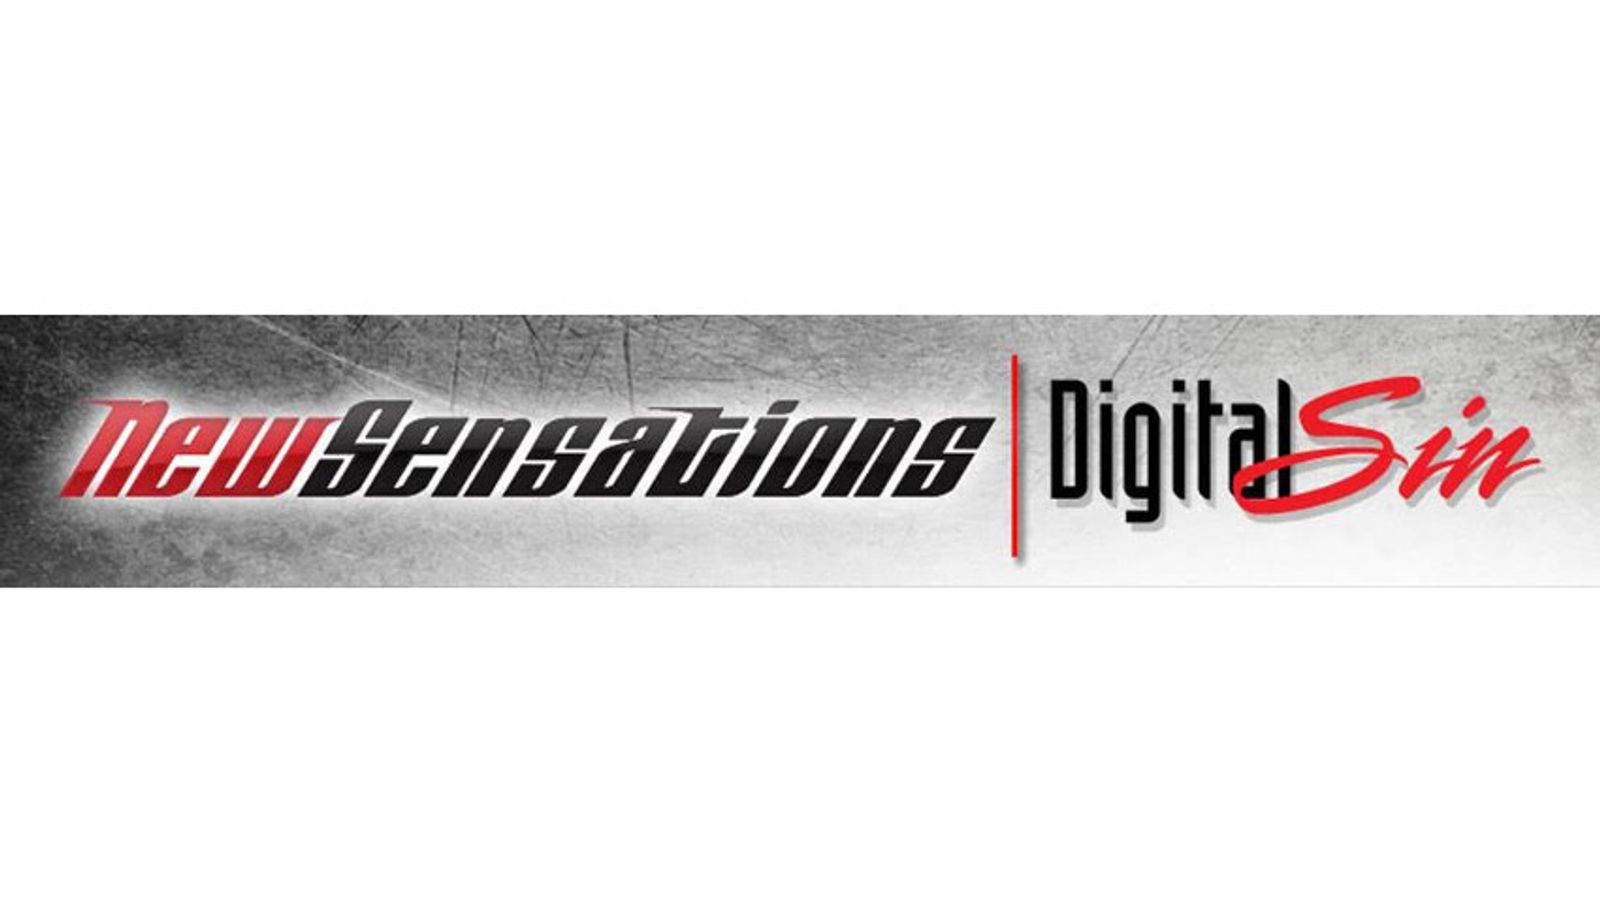 New Sensations/Digital Sin Receive 39 Nominations for 2017 AVN Awards